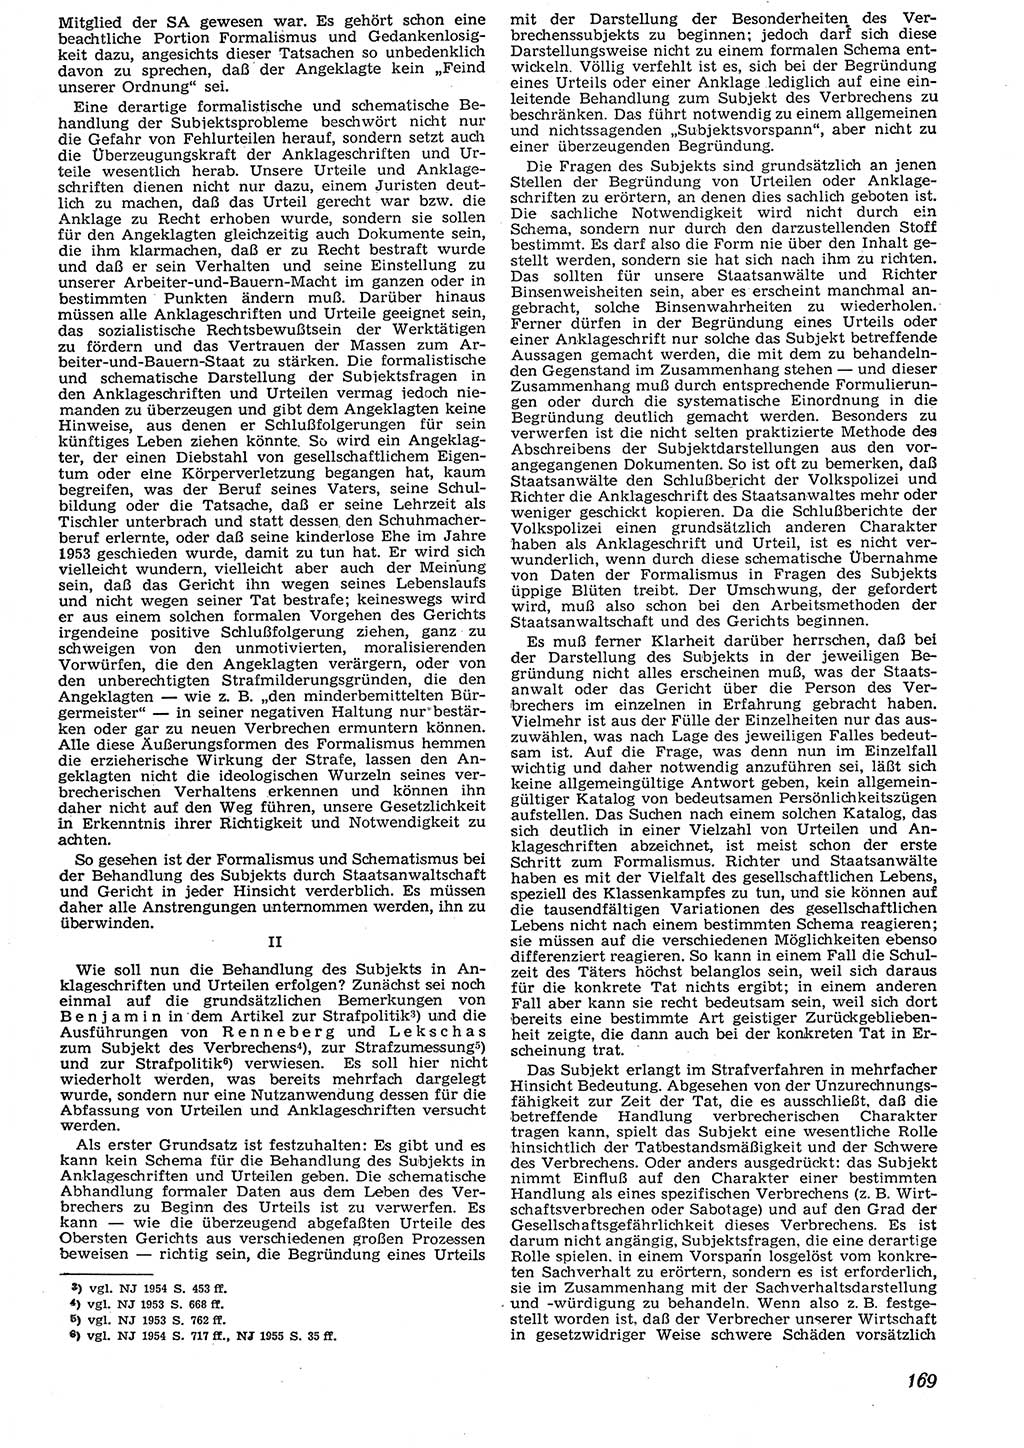 Neue Justiz (NJ), Zeitschrift für Recht und Rechtswissenschaft [Deutsche Demokratische Republik (DDR)], 10. Jahrgang 1956, Seite 169 (NJ DDR 1956, S. 169)